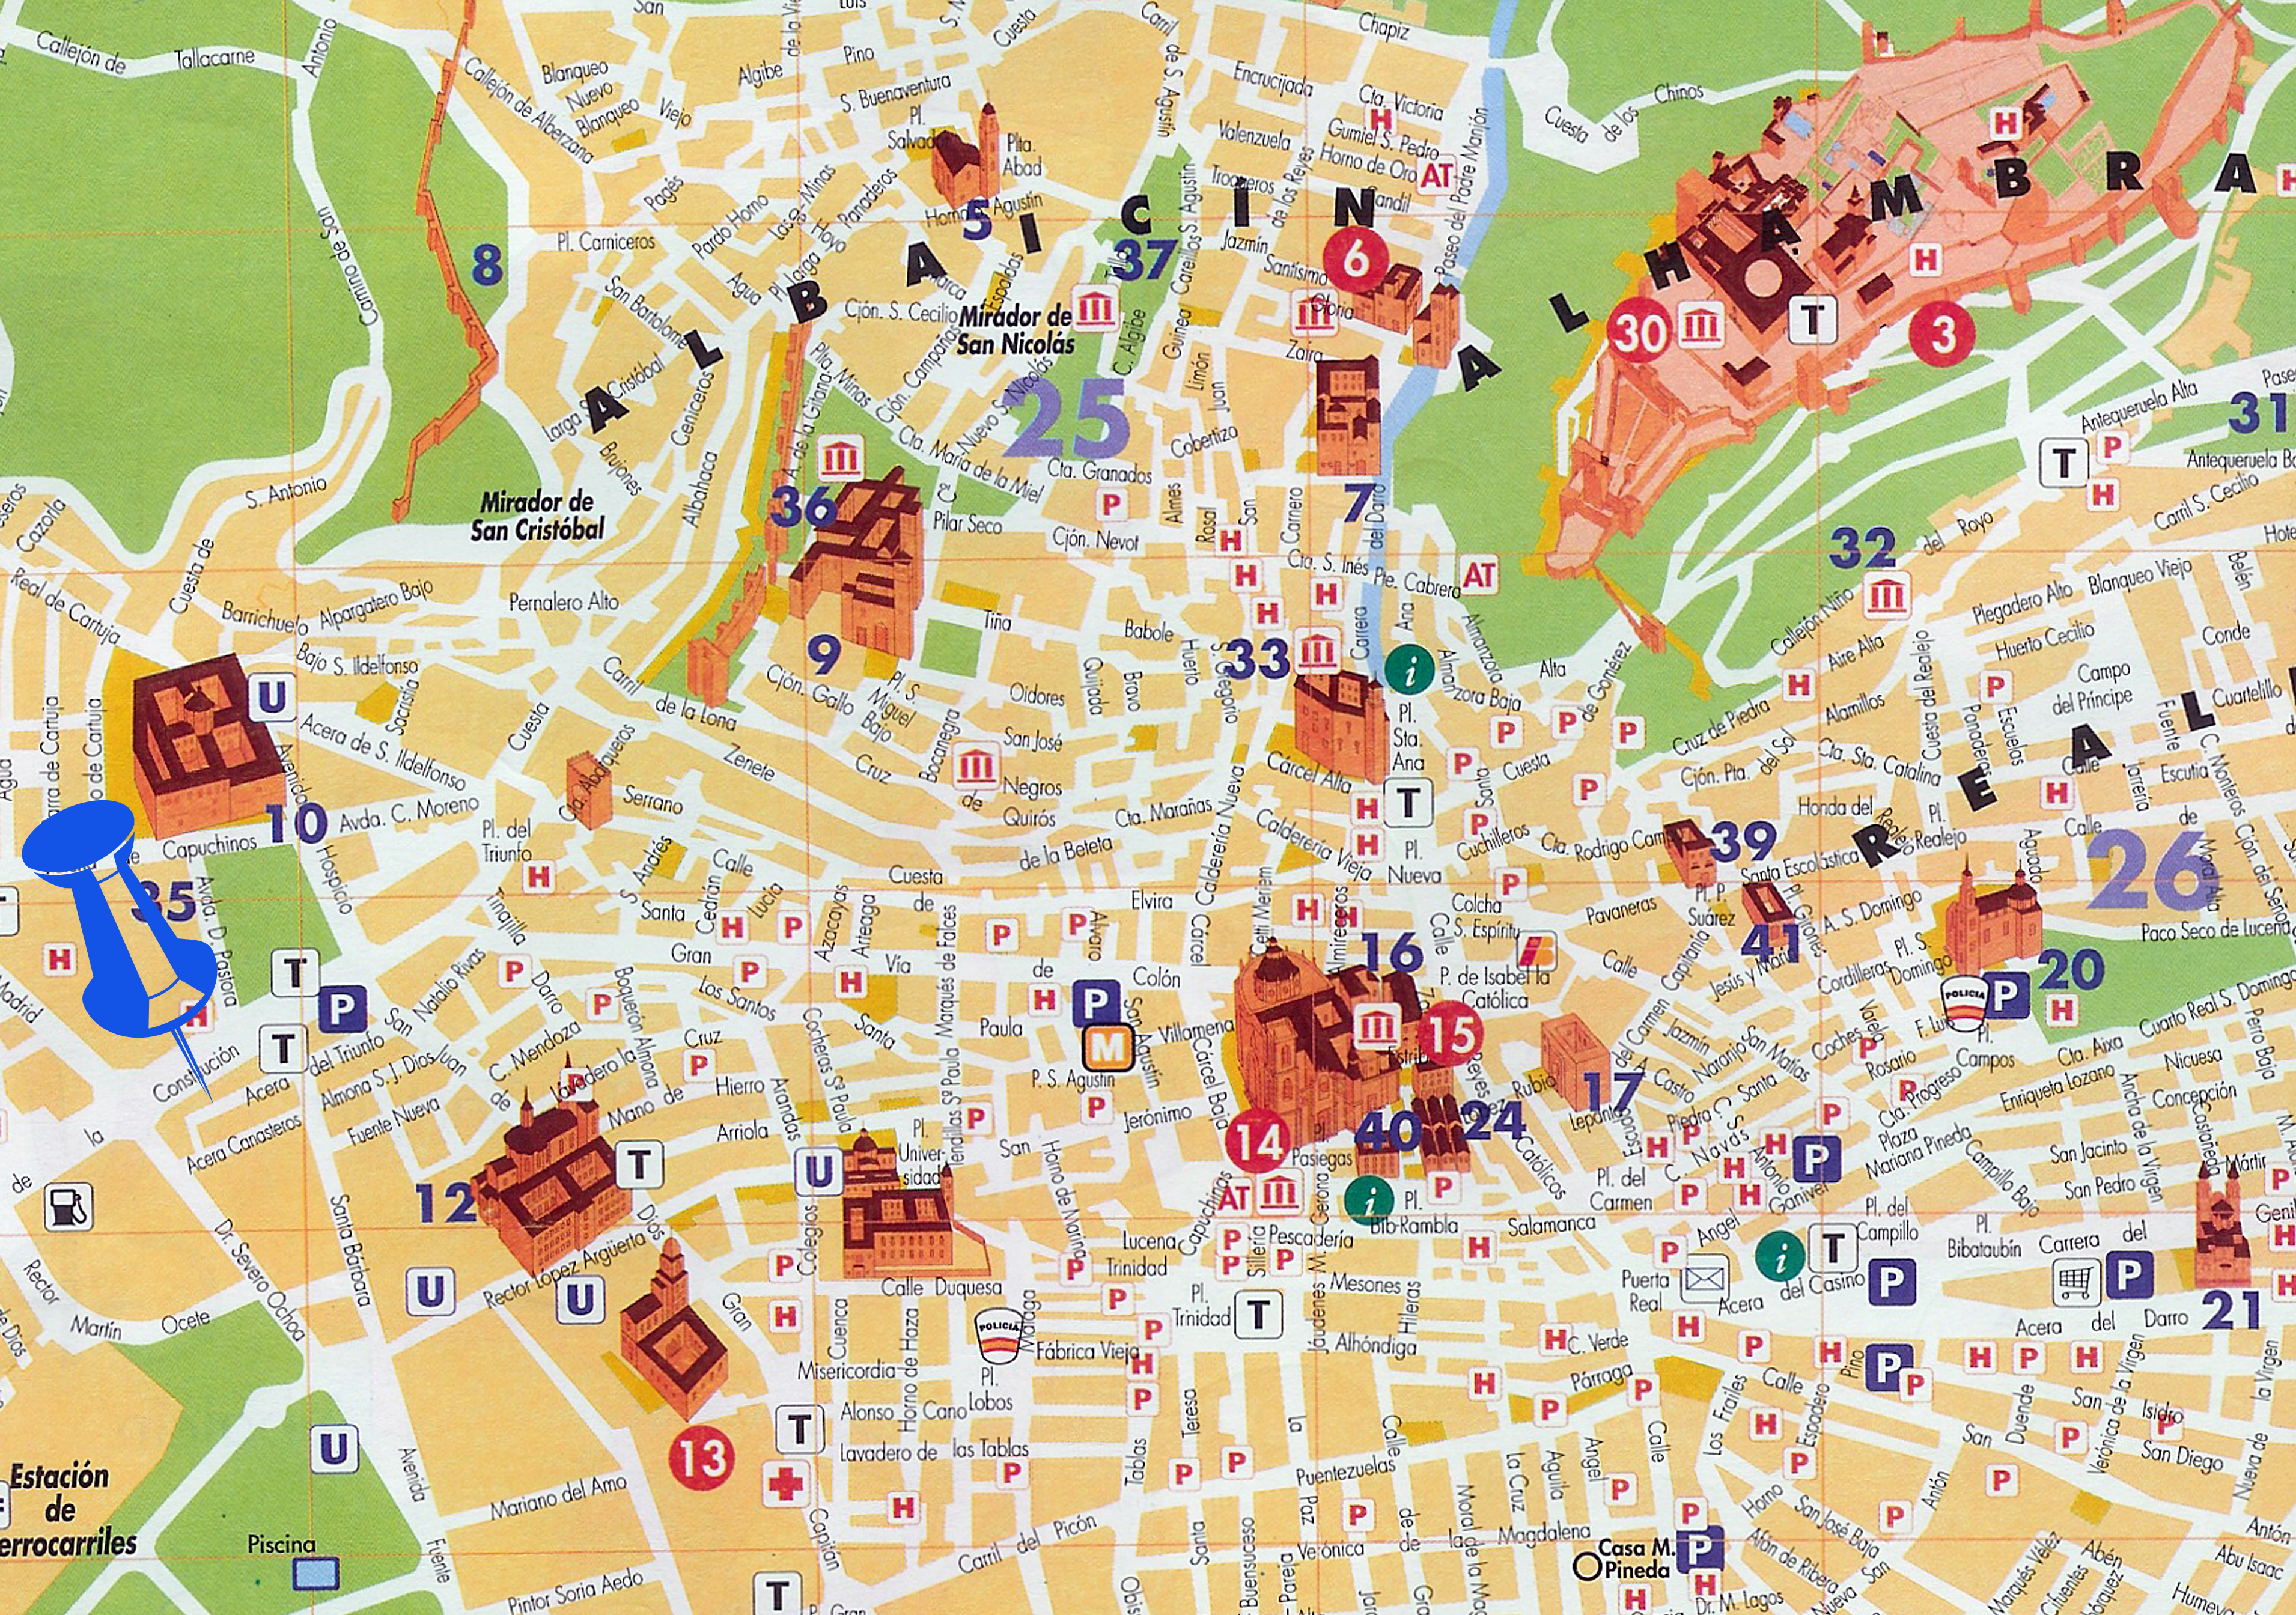 Mapa turístico de Granada - Tamaño completo